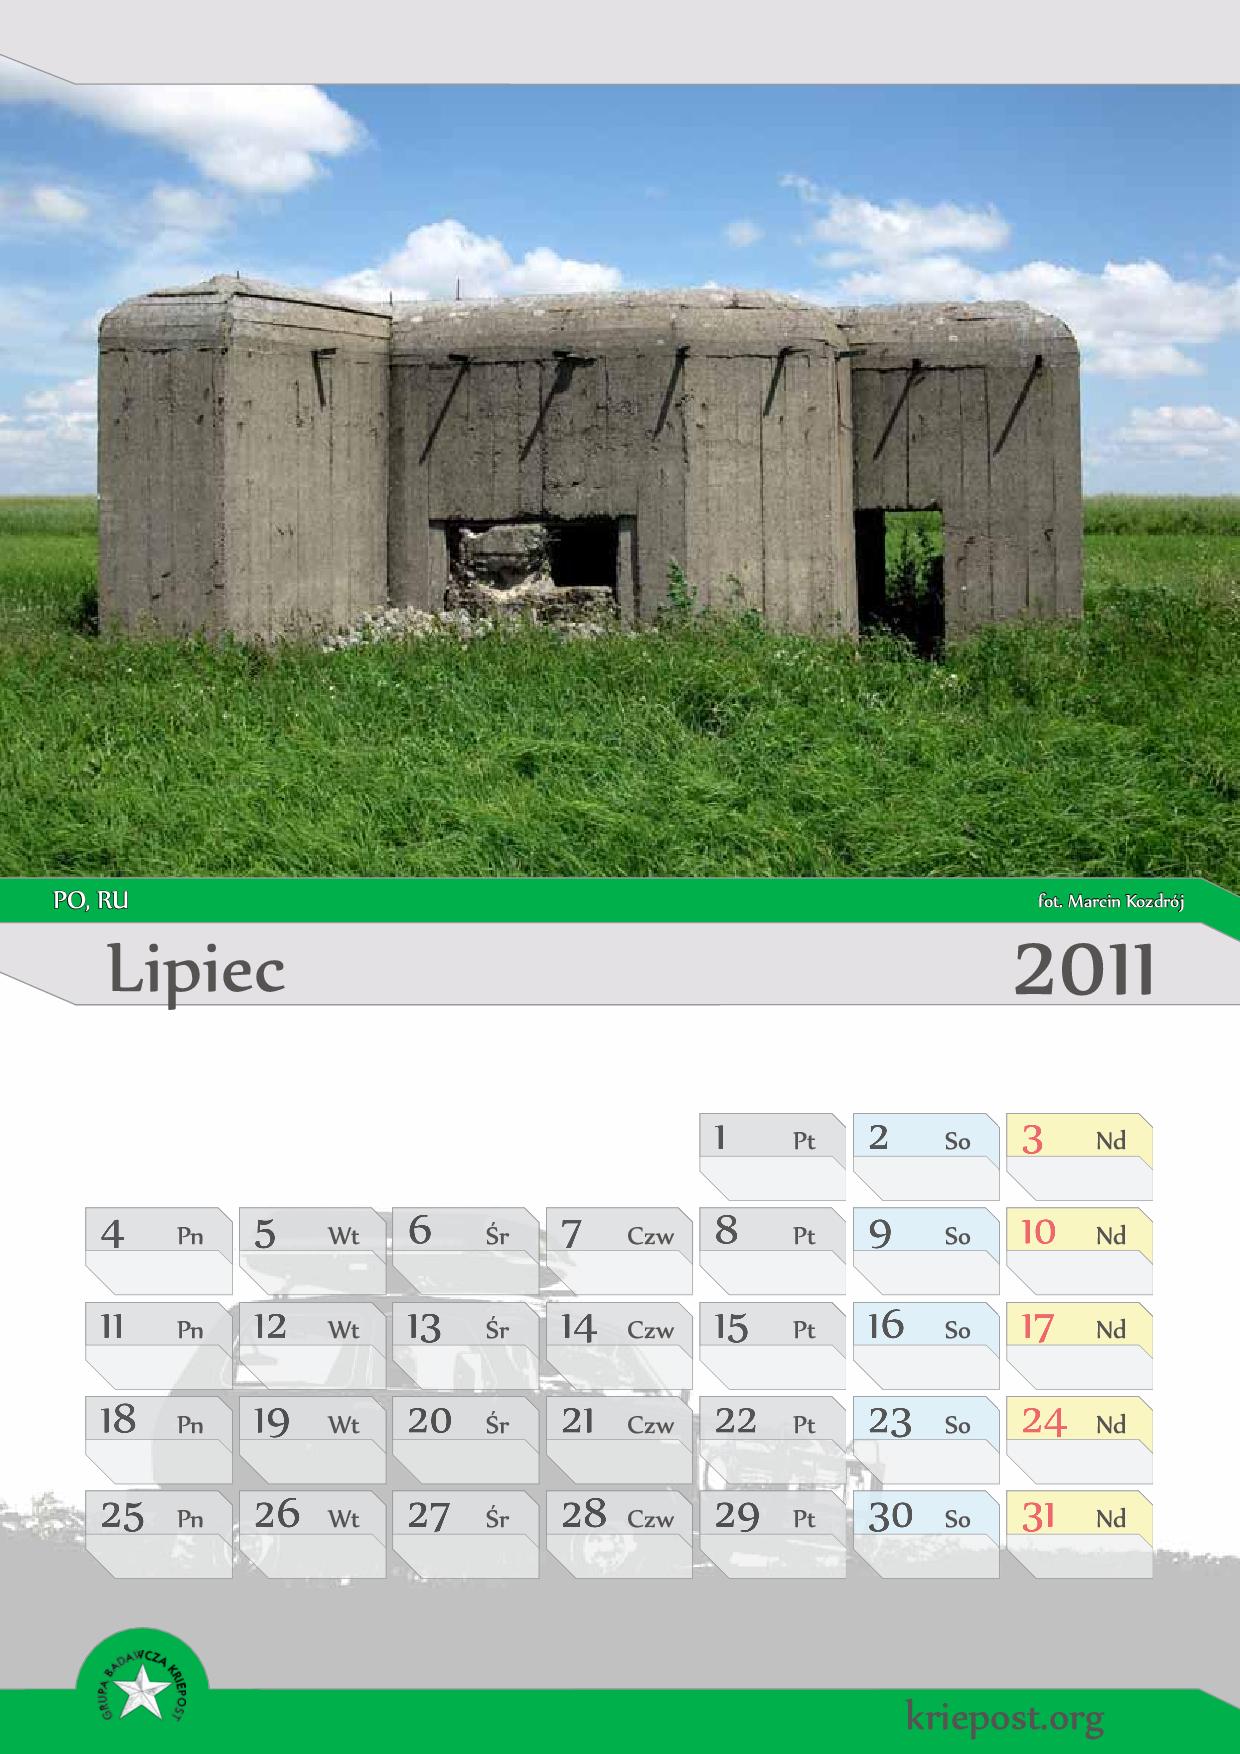 GB Kriepost kalendarz 2011 lipiec